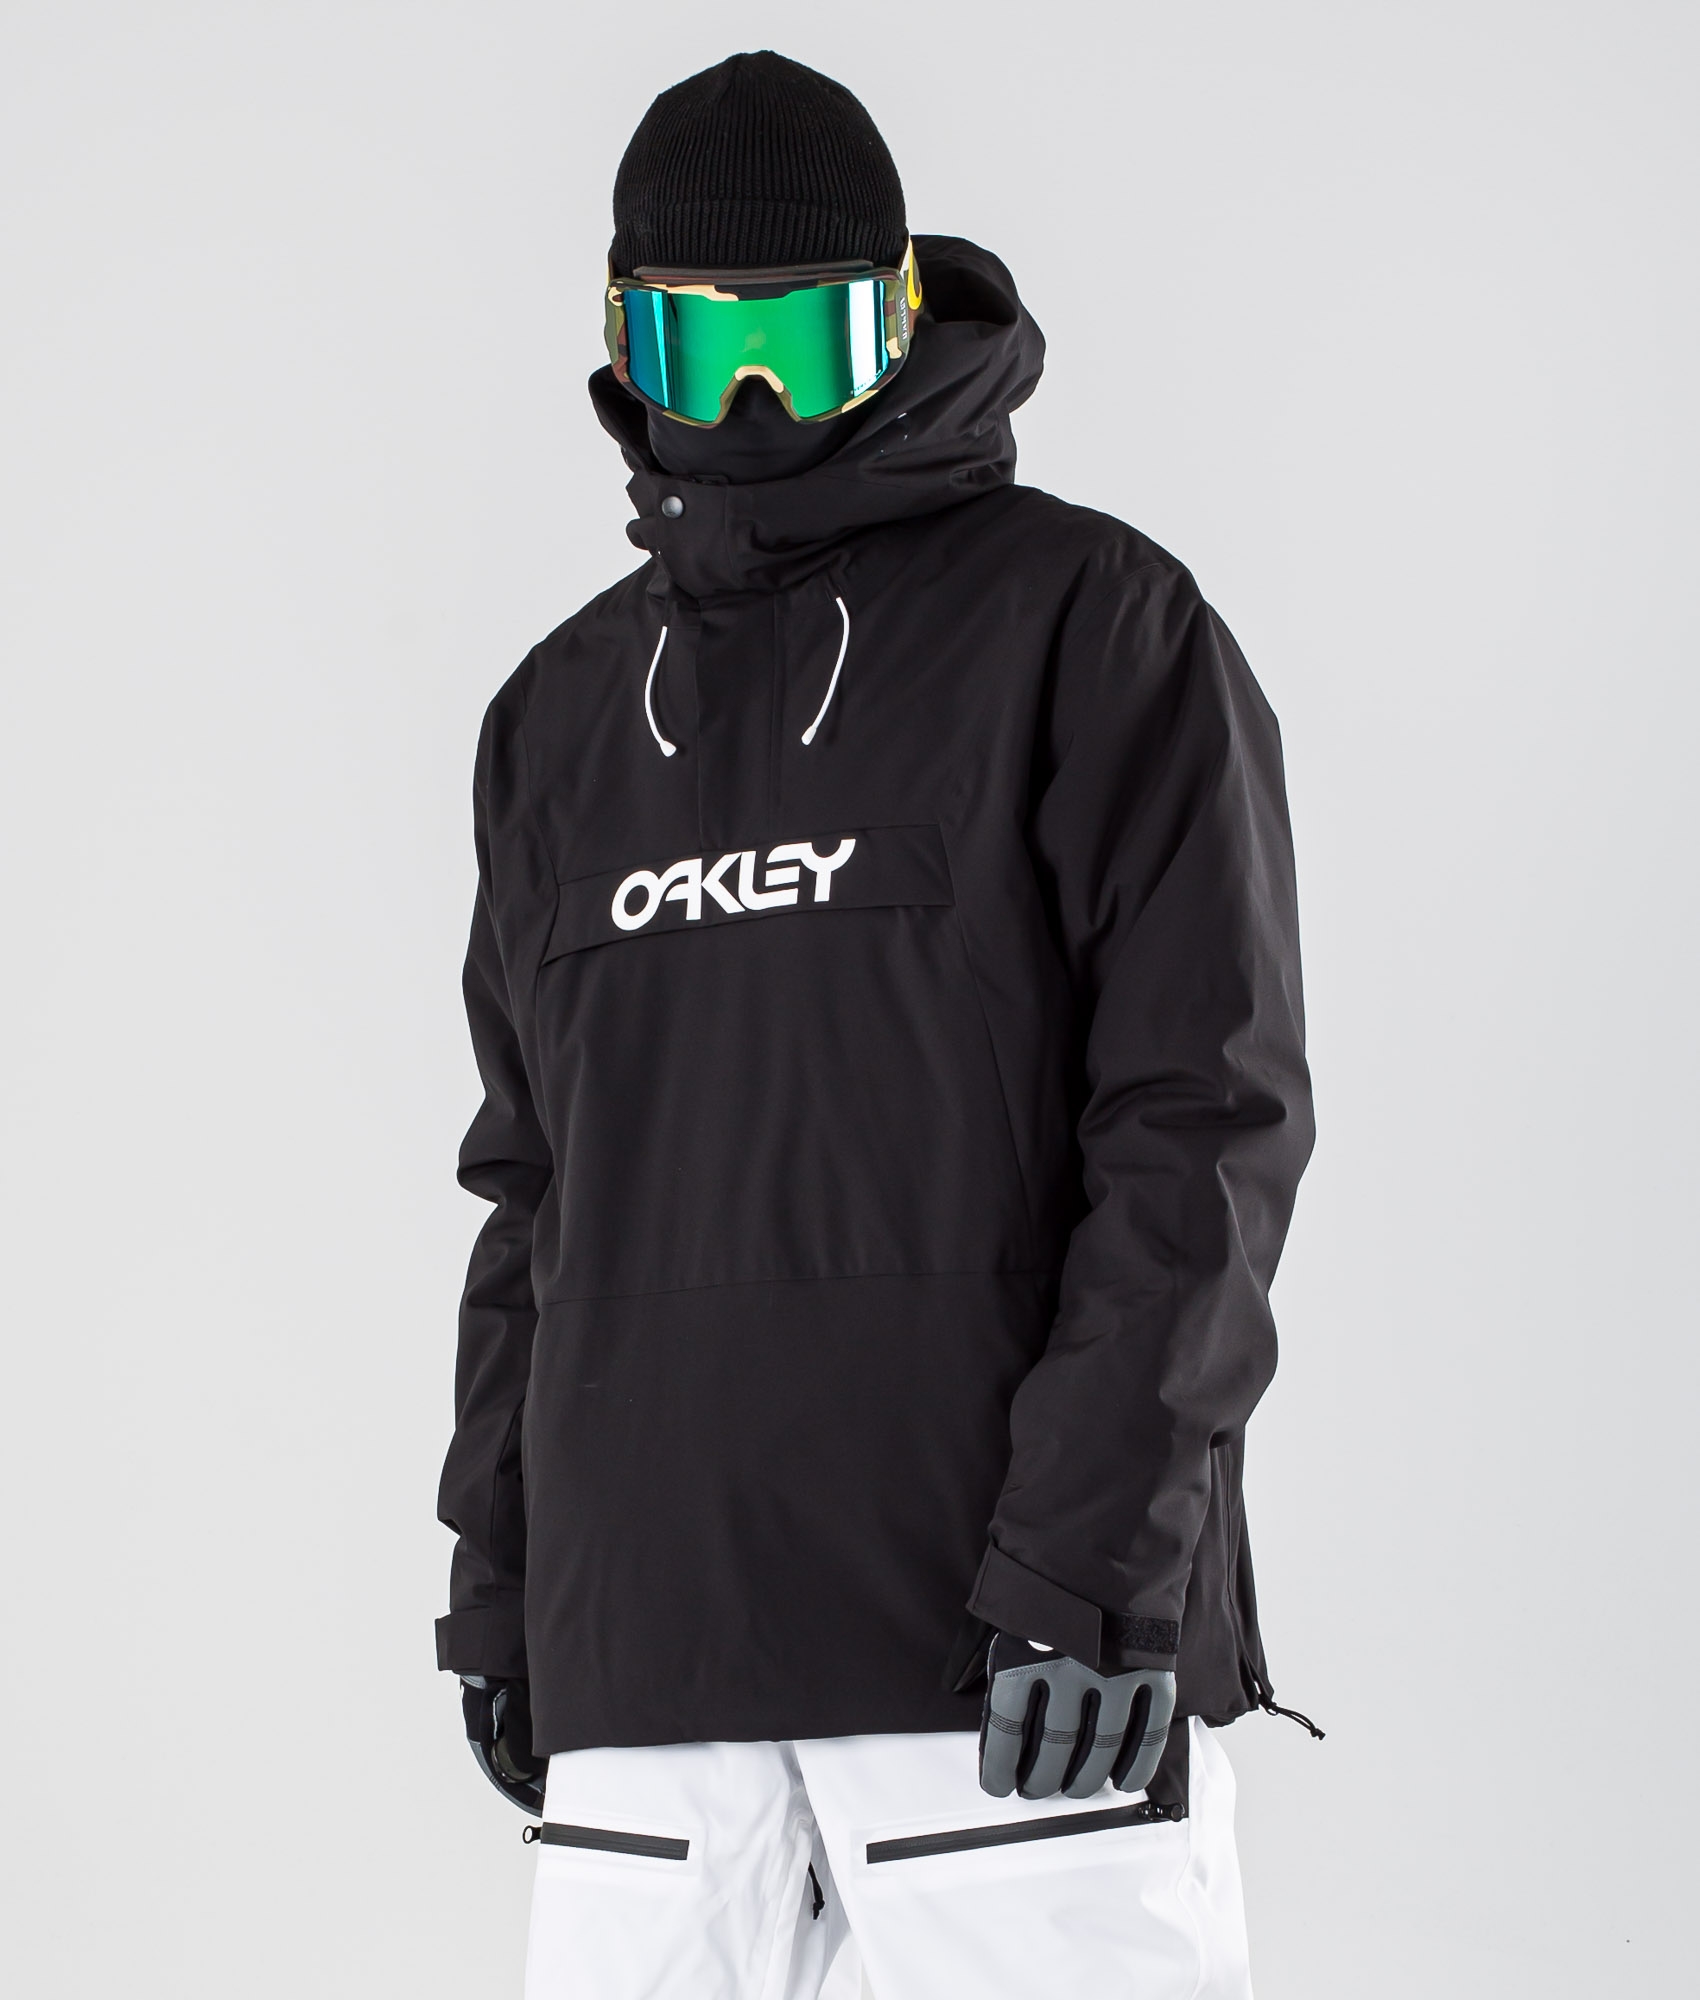 oakley jacket sale